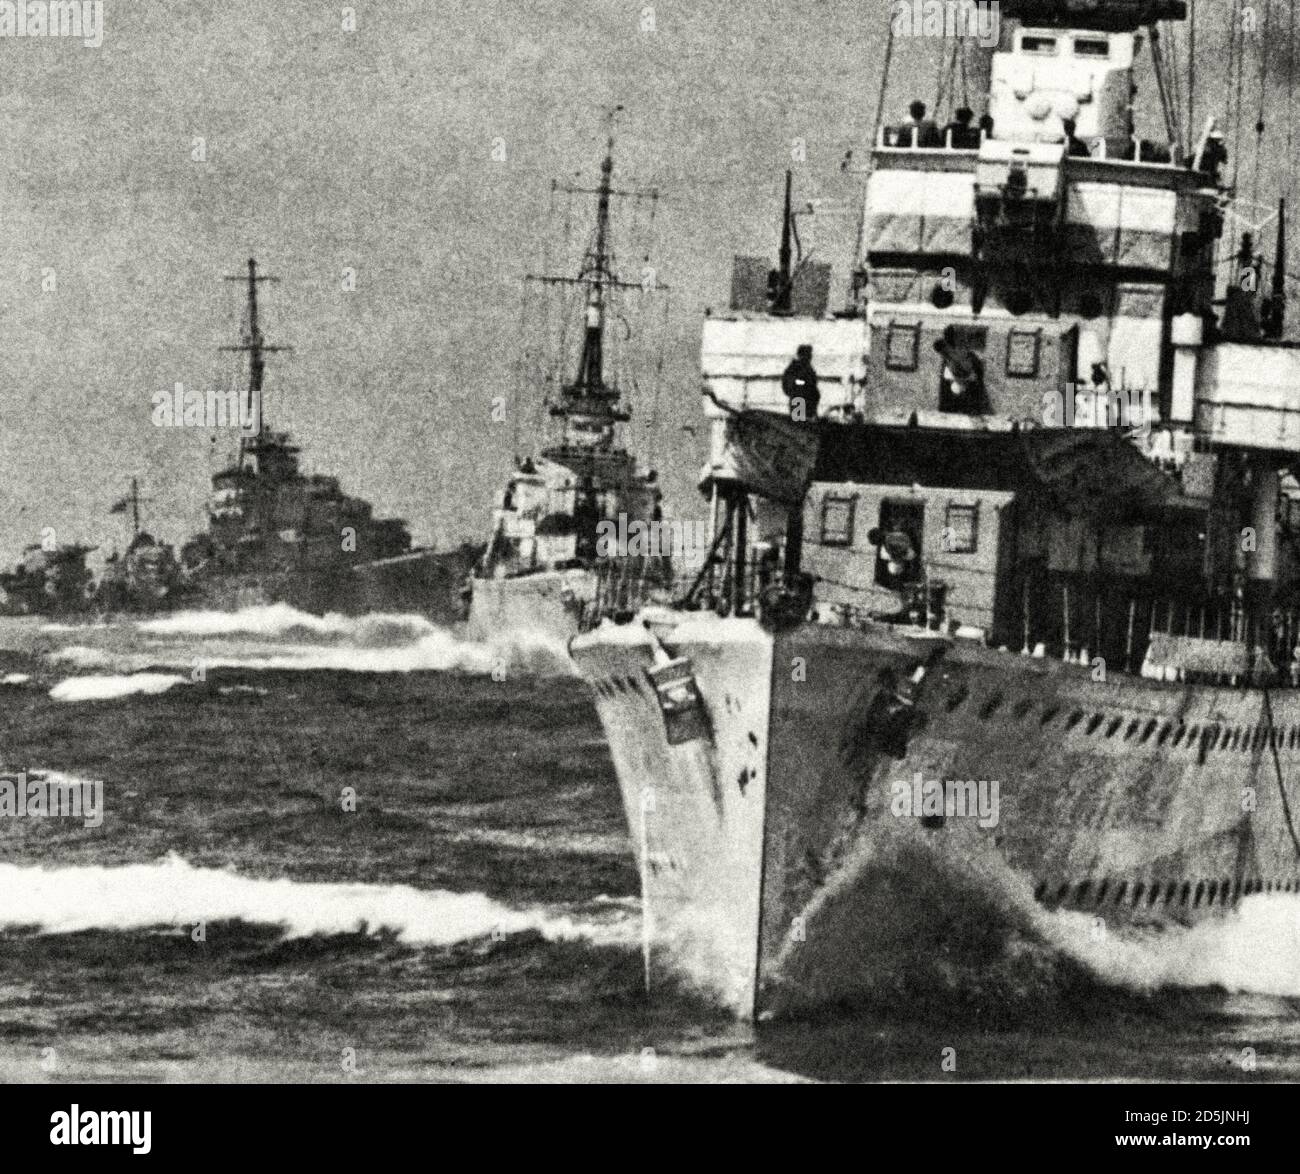 Les destroyers britanniques vont en mer depuis Scapaa Flow pour accompagner le convoi de PQ-17. Le tout premier destroyer est Fury (HMS Fury). Skapa Flow, Écosse. Juin Banque D'Images